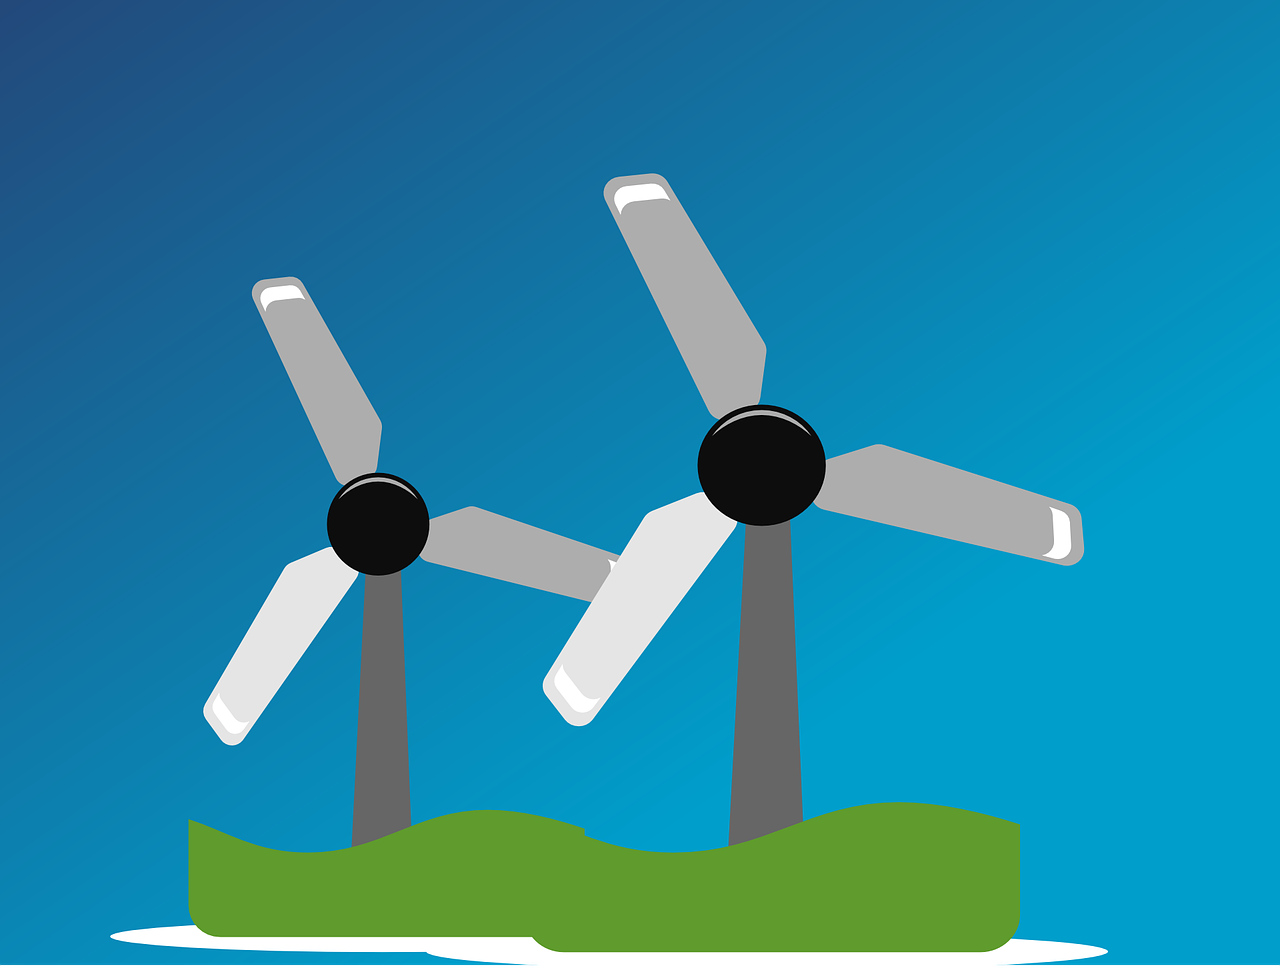 Vėjo Jėgainių Parkas, Vėjo Energija, Vėjo Parkas, Vėjo Jėgainių Parkas, Vėjo Energija, Vėjo Turbinos, Atsinaujinanti Energija, Vėjas, Energija, Atsinaujinanti